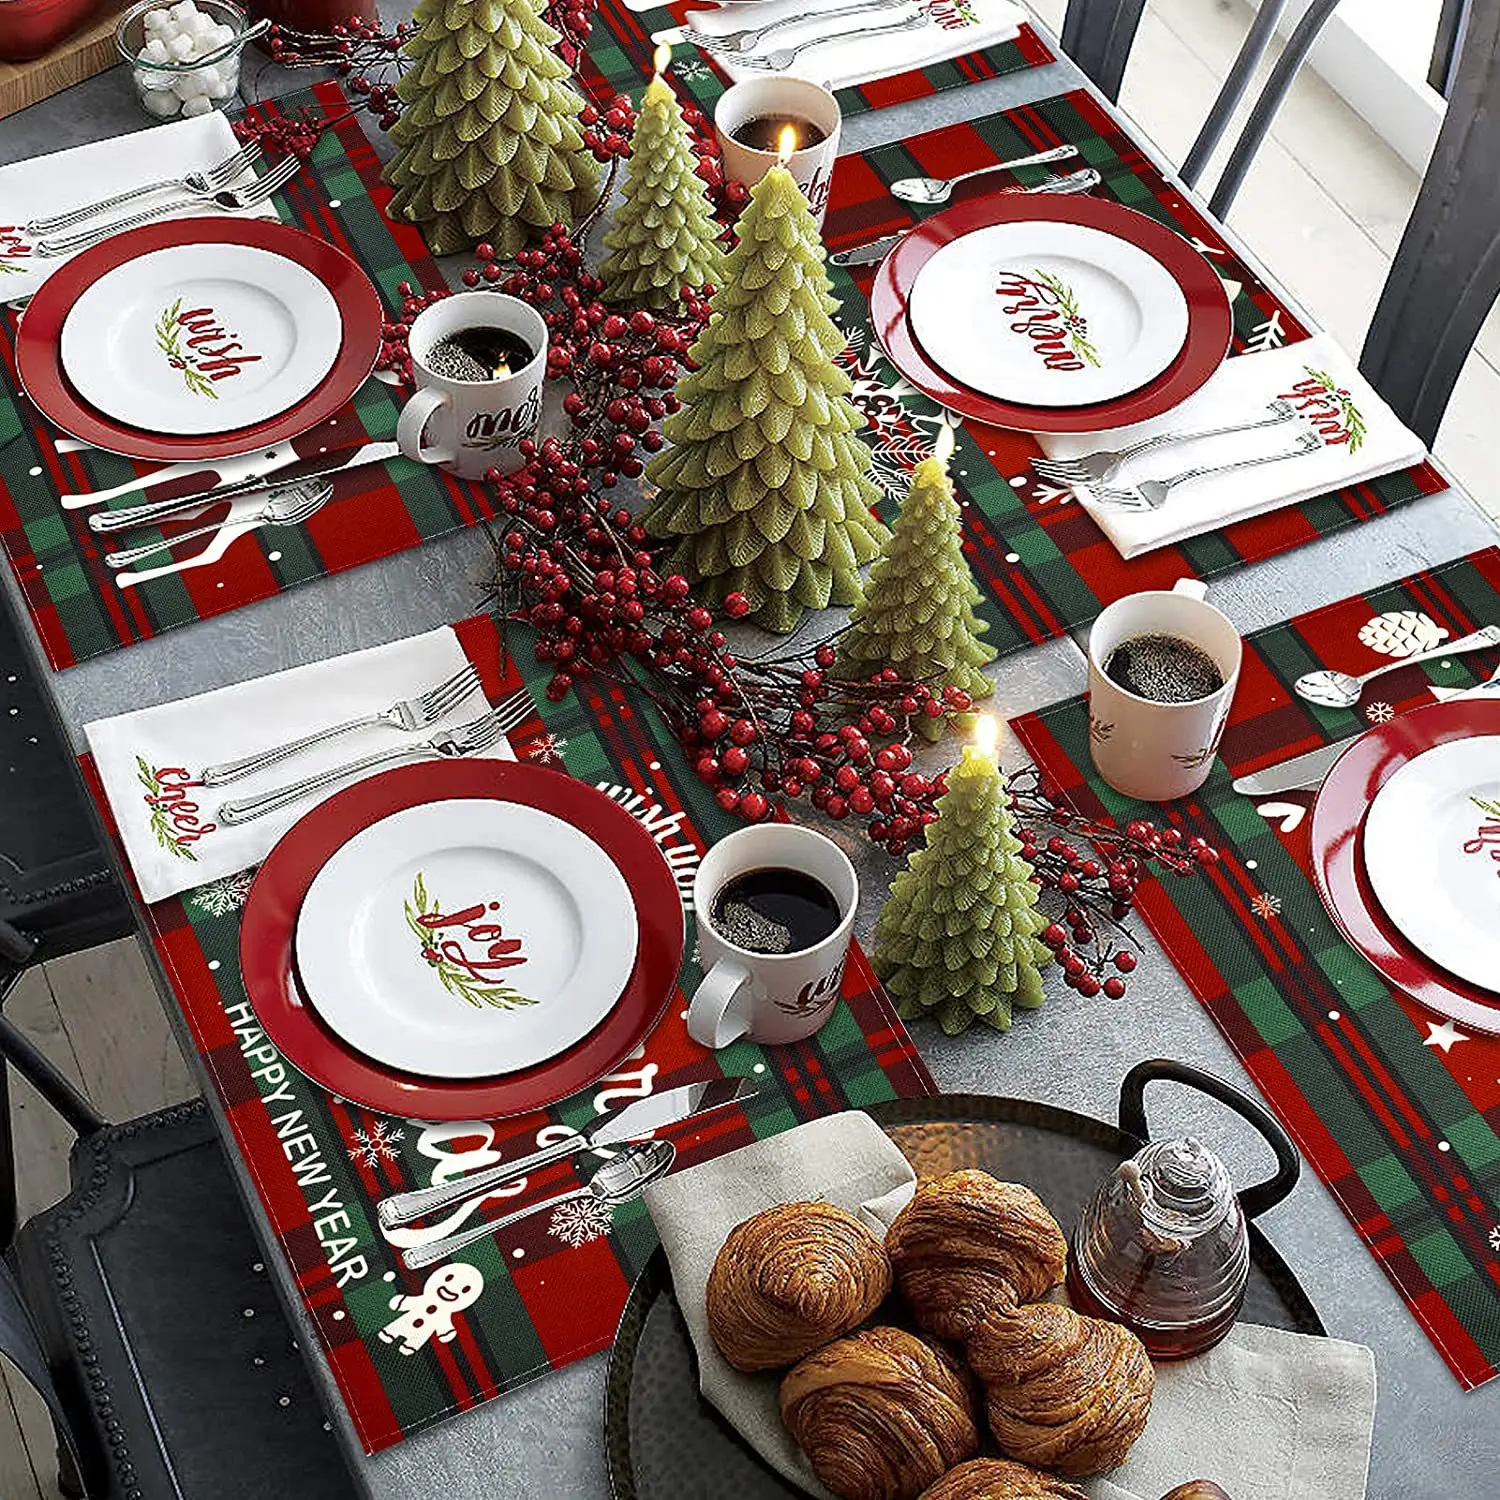 Doek Placemats 100% Katoen Set Van 4 Decoratieve Wasbare Tafel Placemat Voor Geschenken, Dineren, Vakanties, Buffet Feesten & Bruiloft,